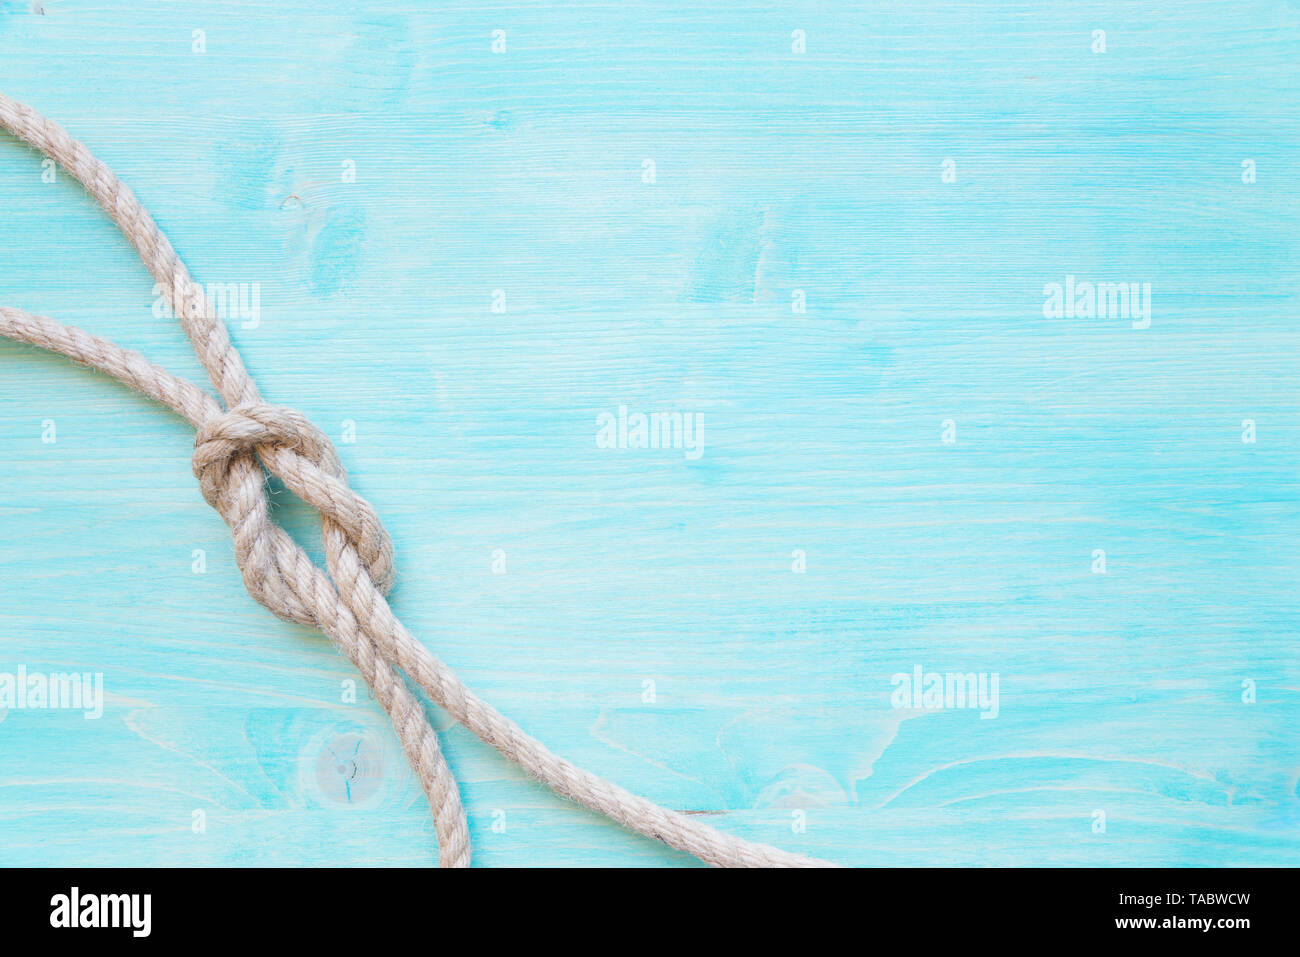 Rauhes hanf Seil gebunden Knoten Meer ist auf dem Hintergrund der Blauen verblasst Holzbohlen. Marine Konzept Stockfoto